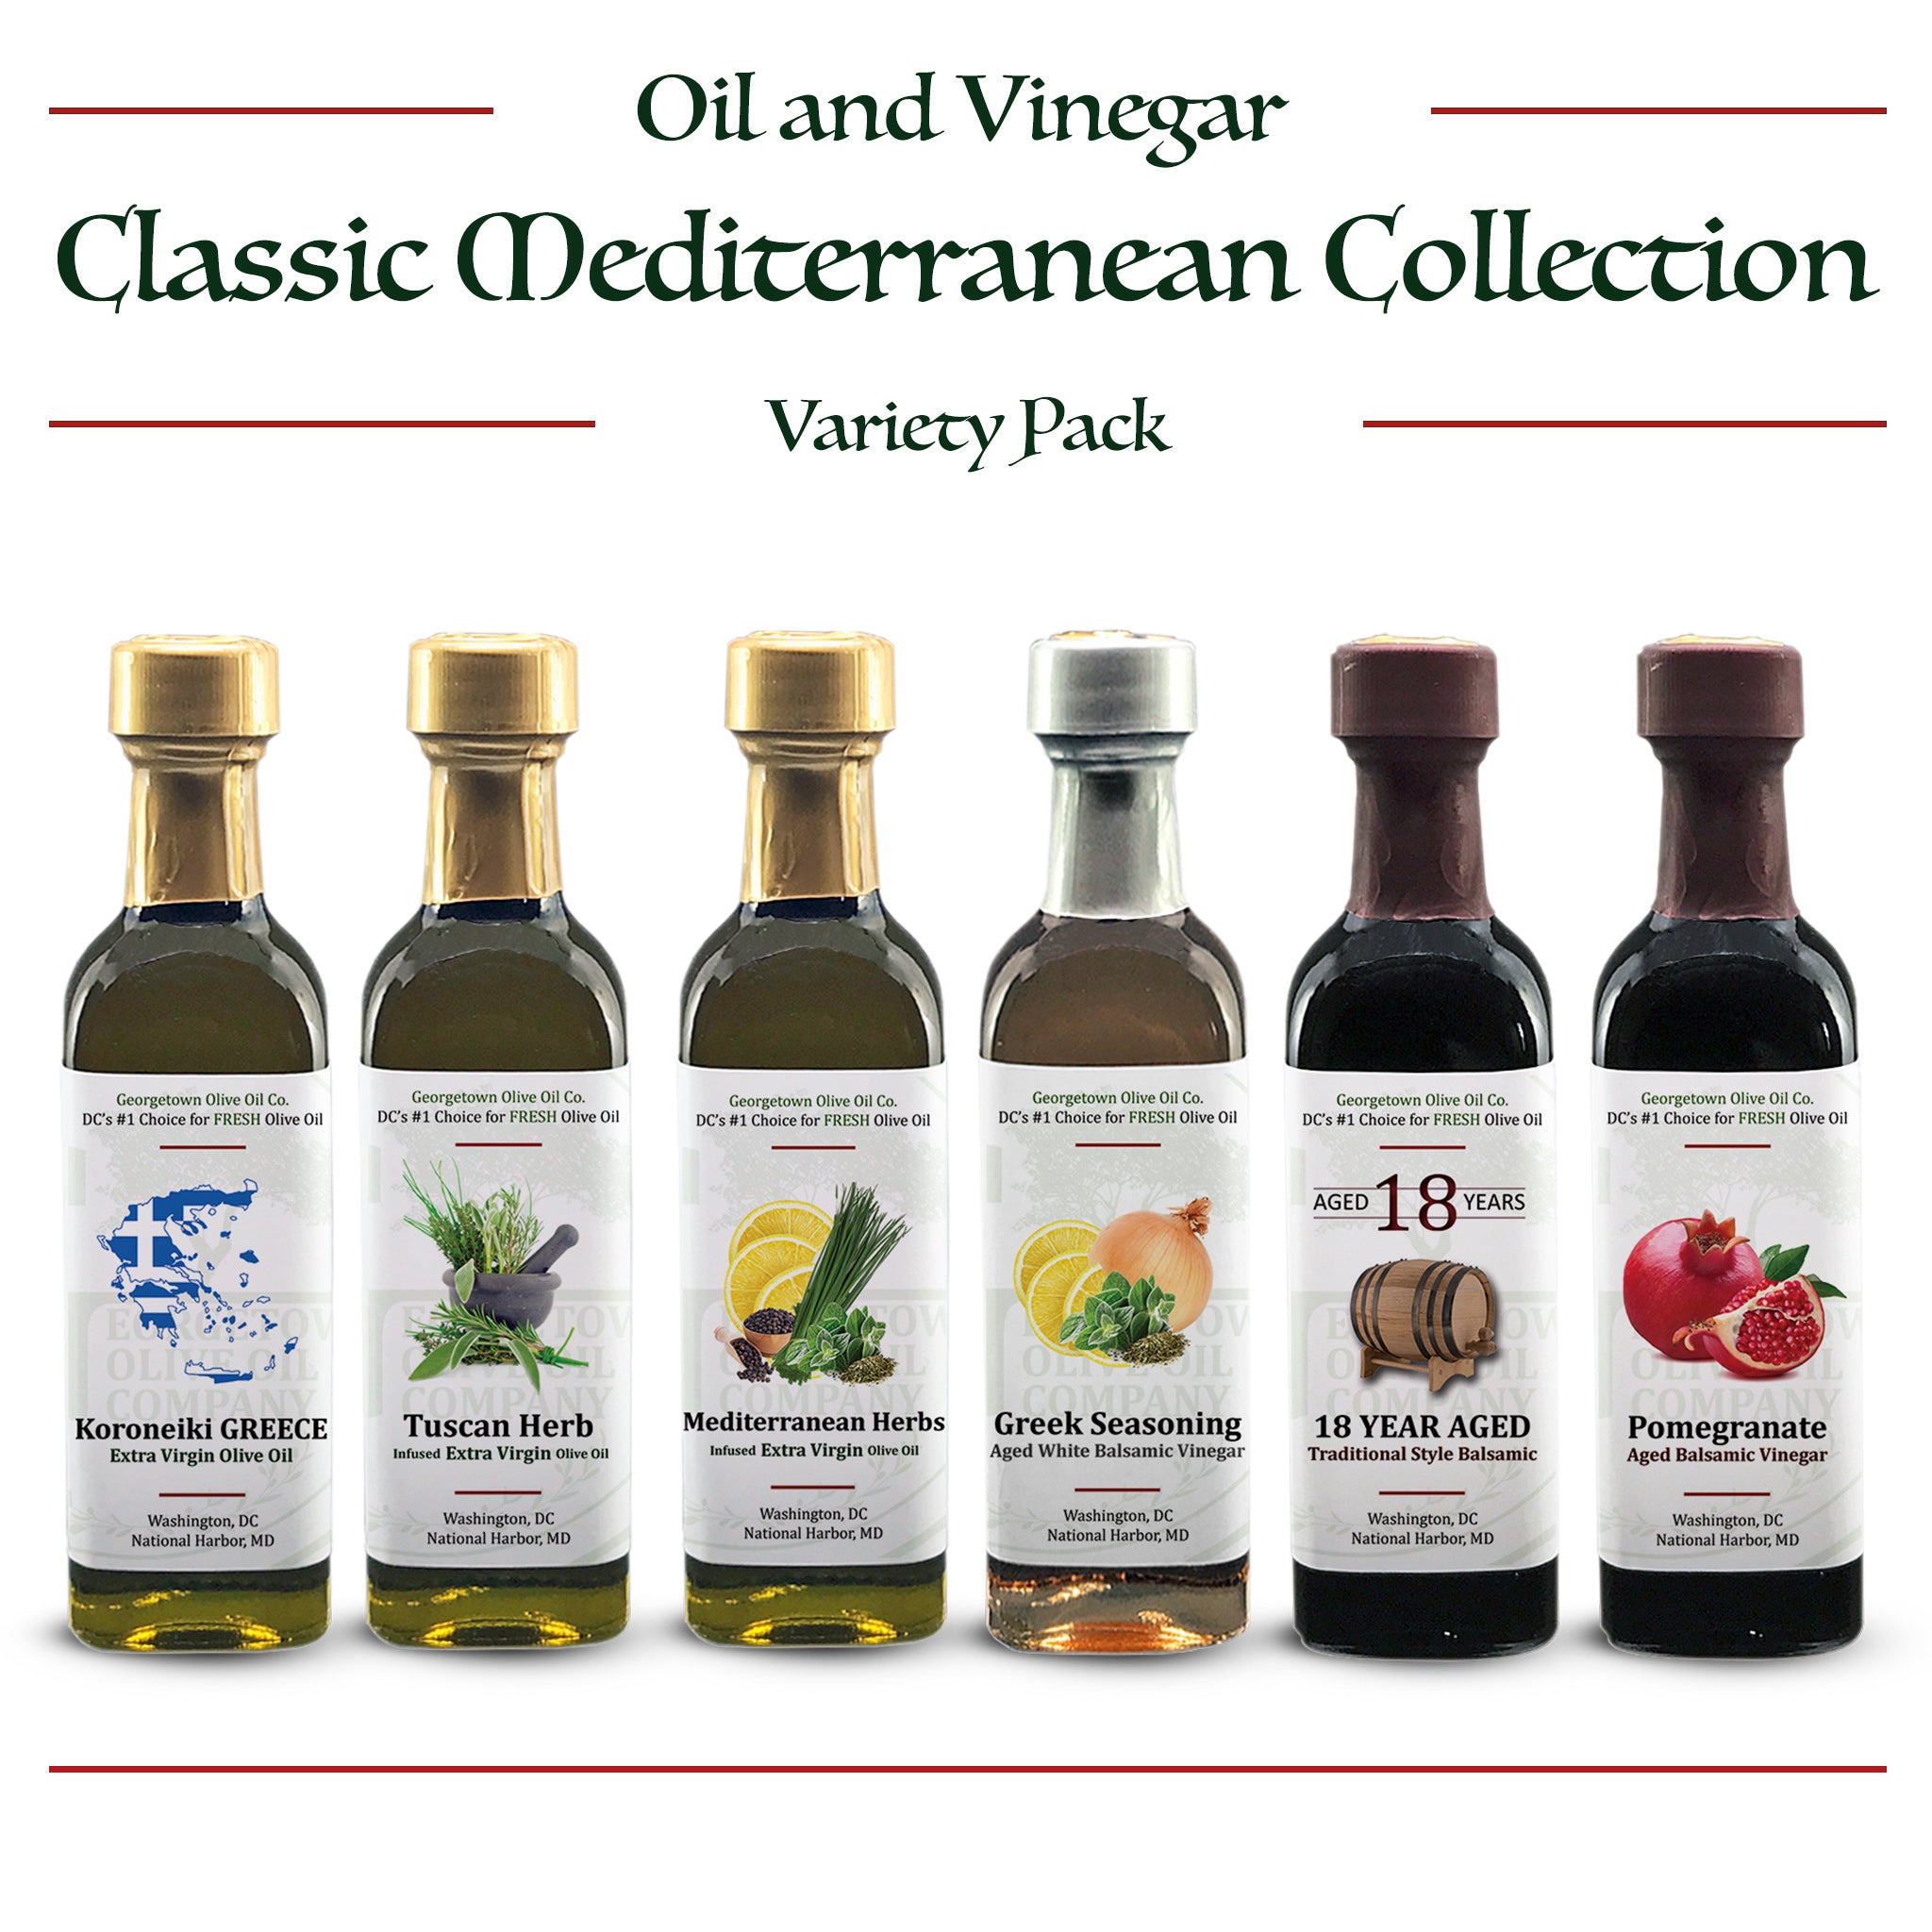 Mediterranean Herbs Seasoning | Georgetown Olive Oil Co.